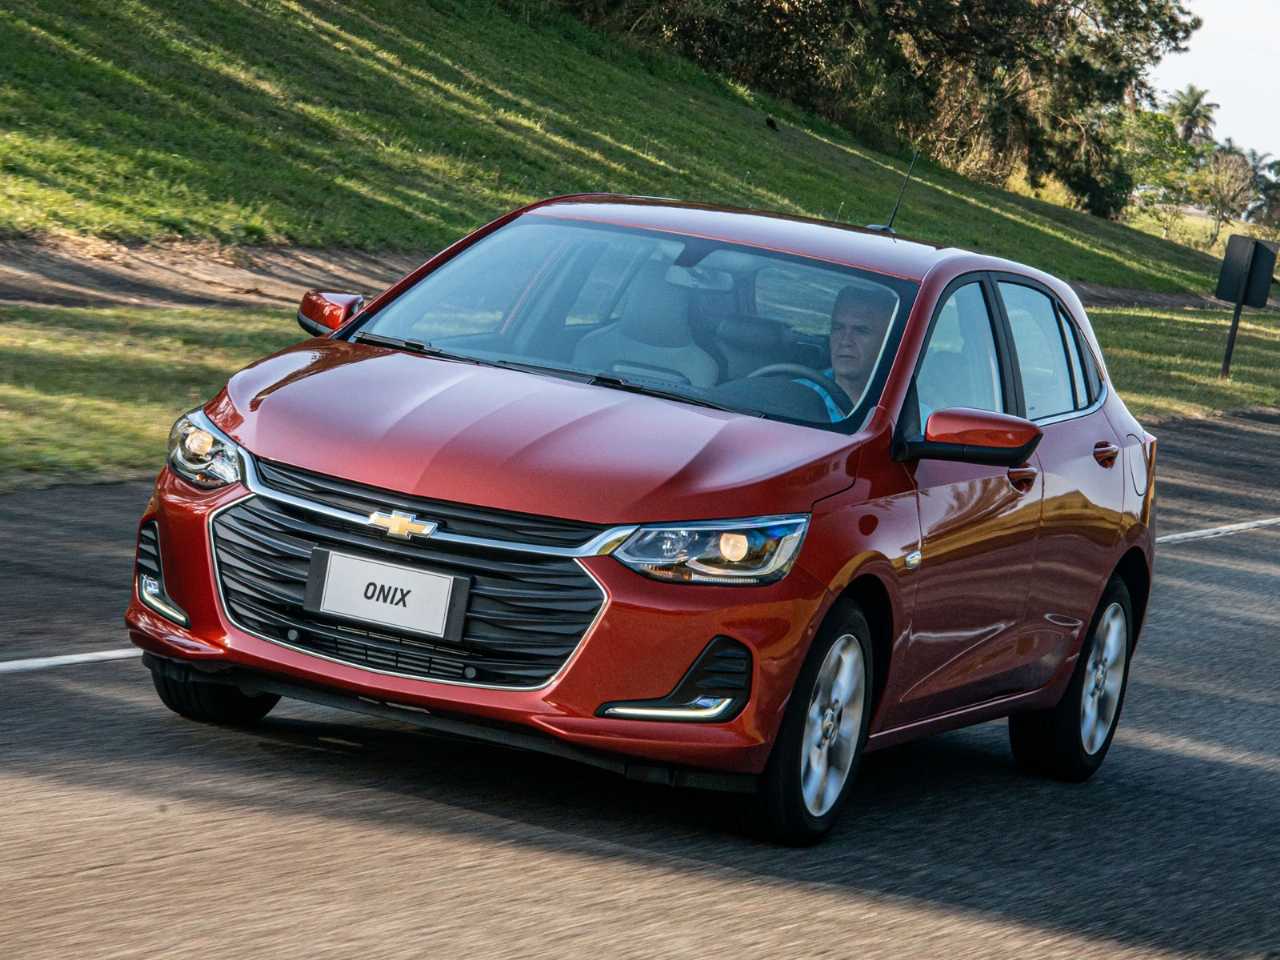 Teste: Chevrolet Onix Plus é mais rápido, econômico e barato que o VW Virtus